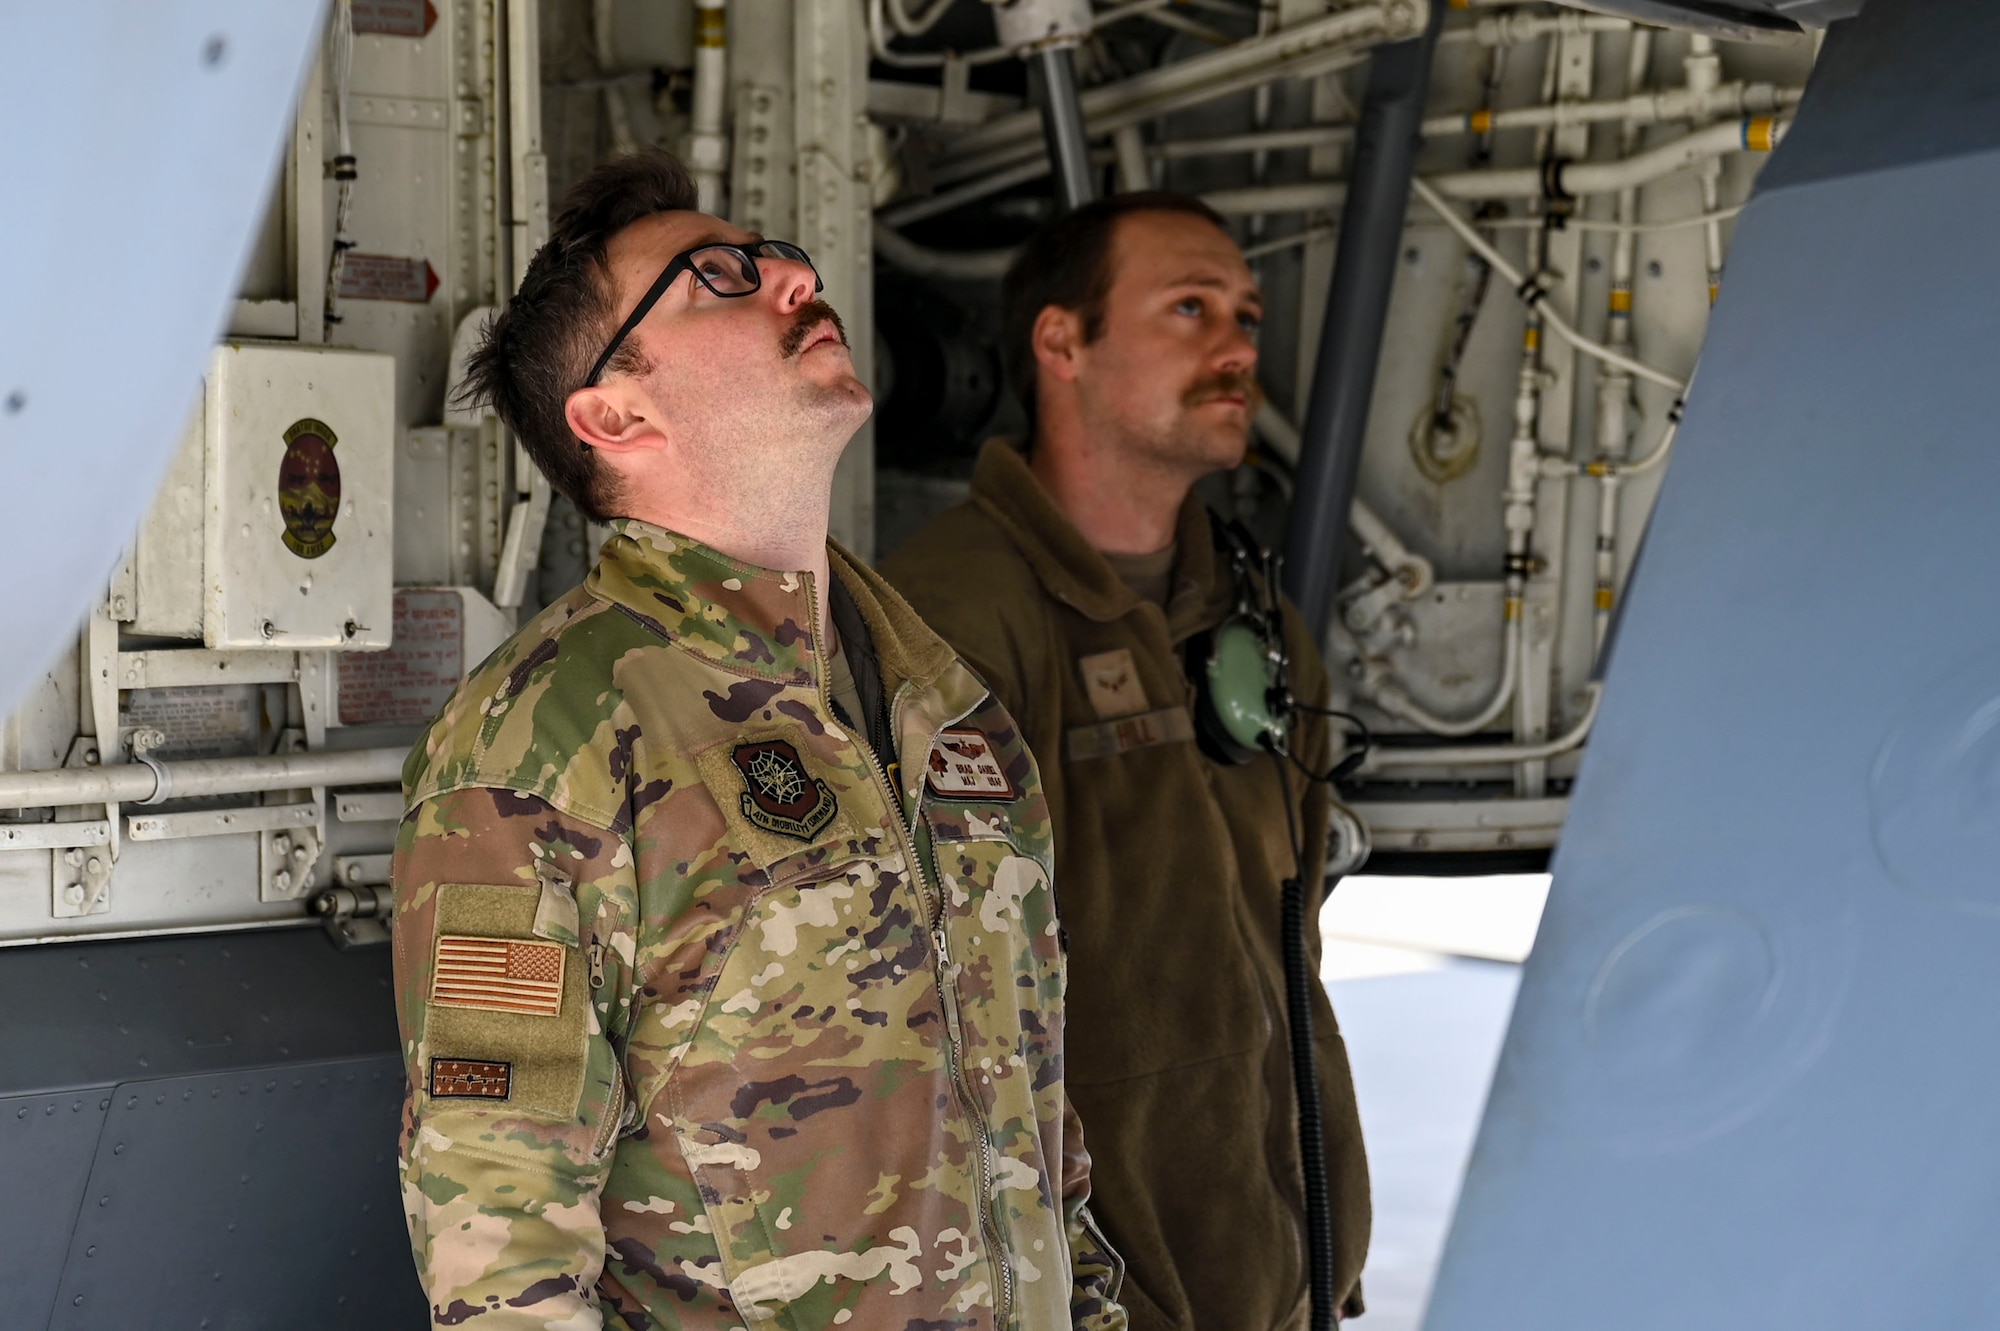 Airmen inspect aircraft